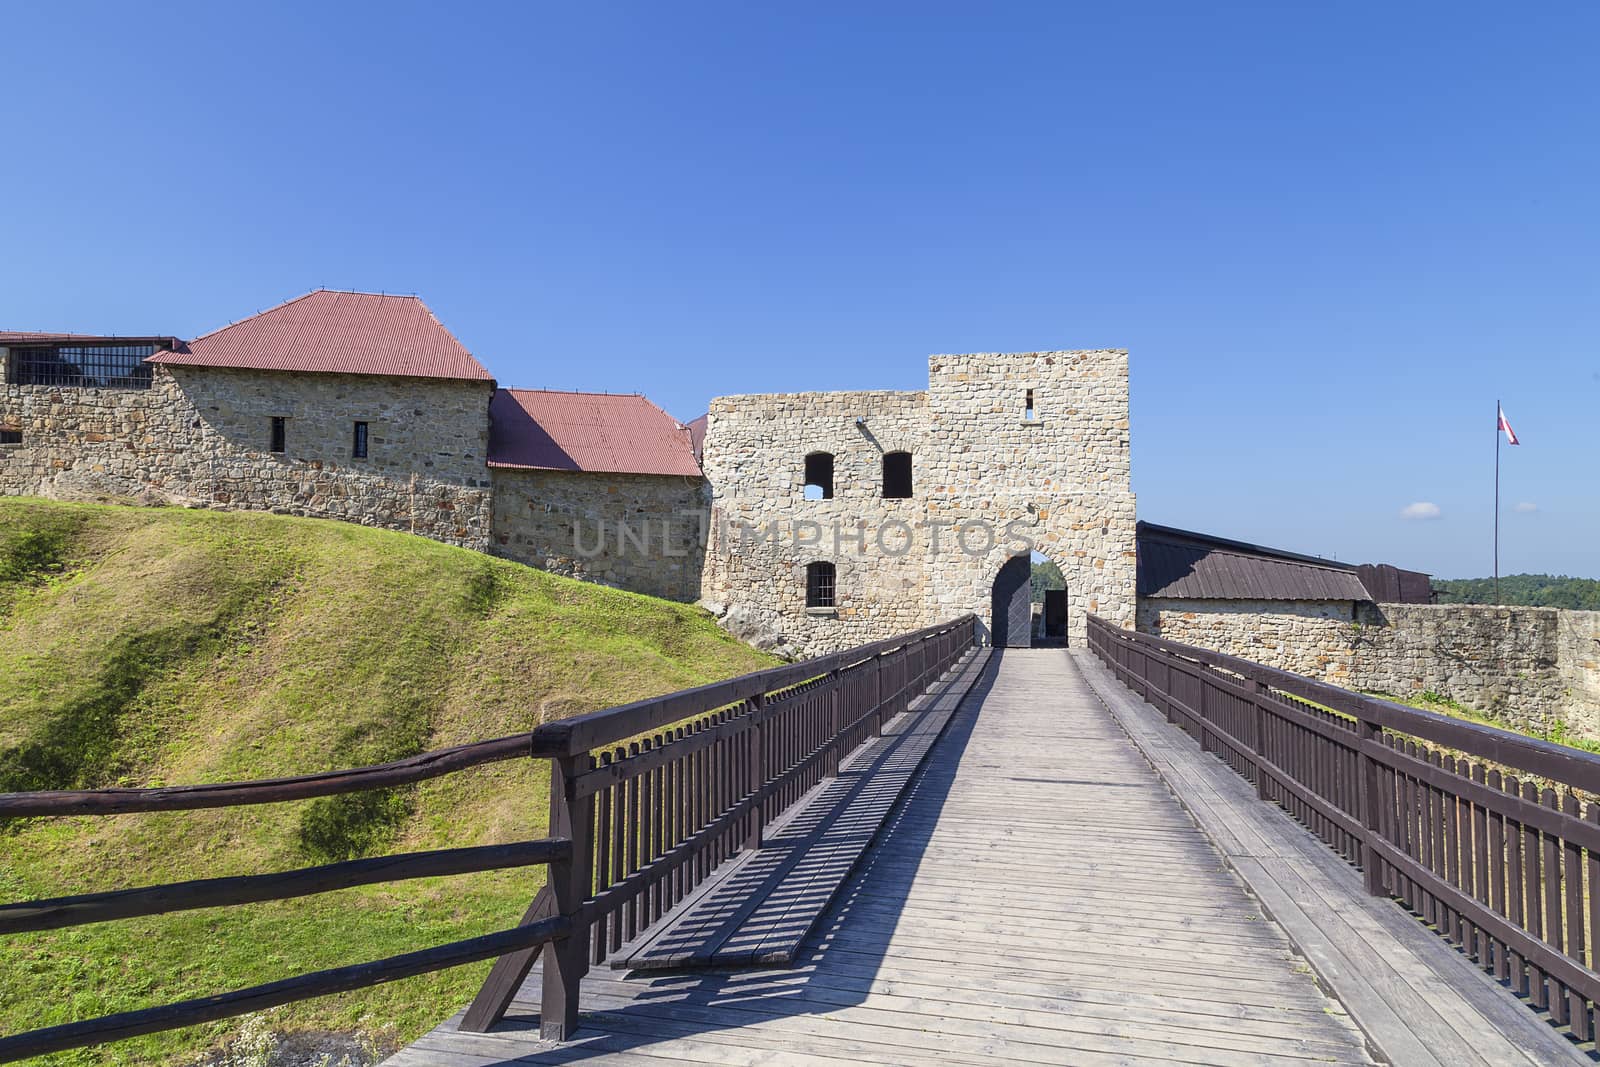 14th century Dobczyce Castle on Lake Dobczyce, near Krakow, Poland